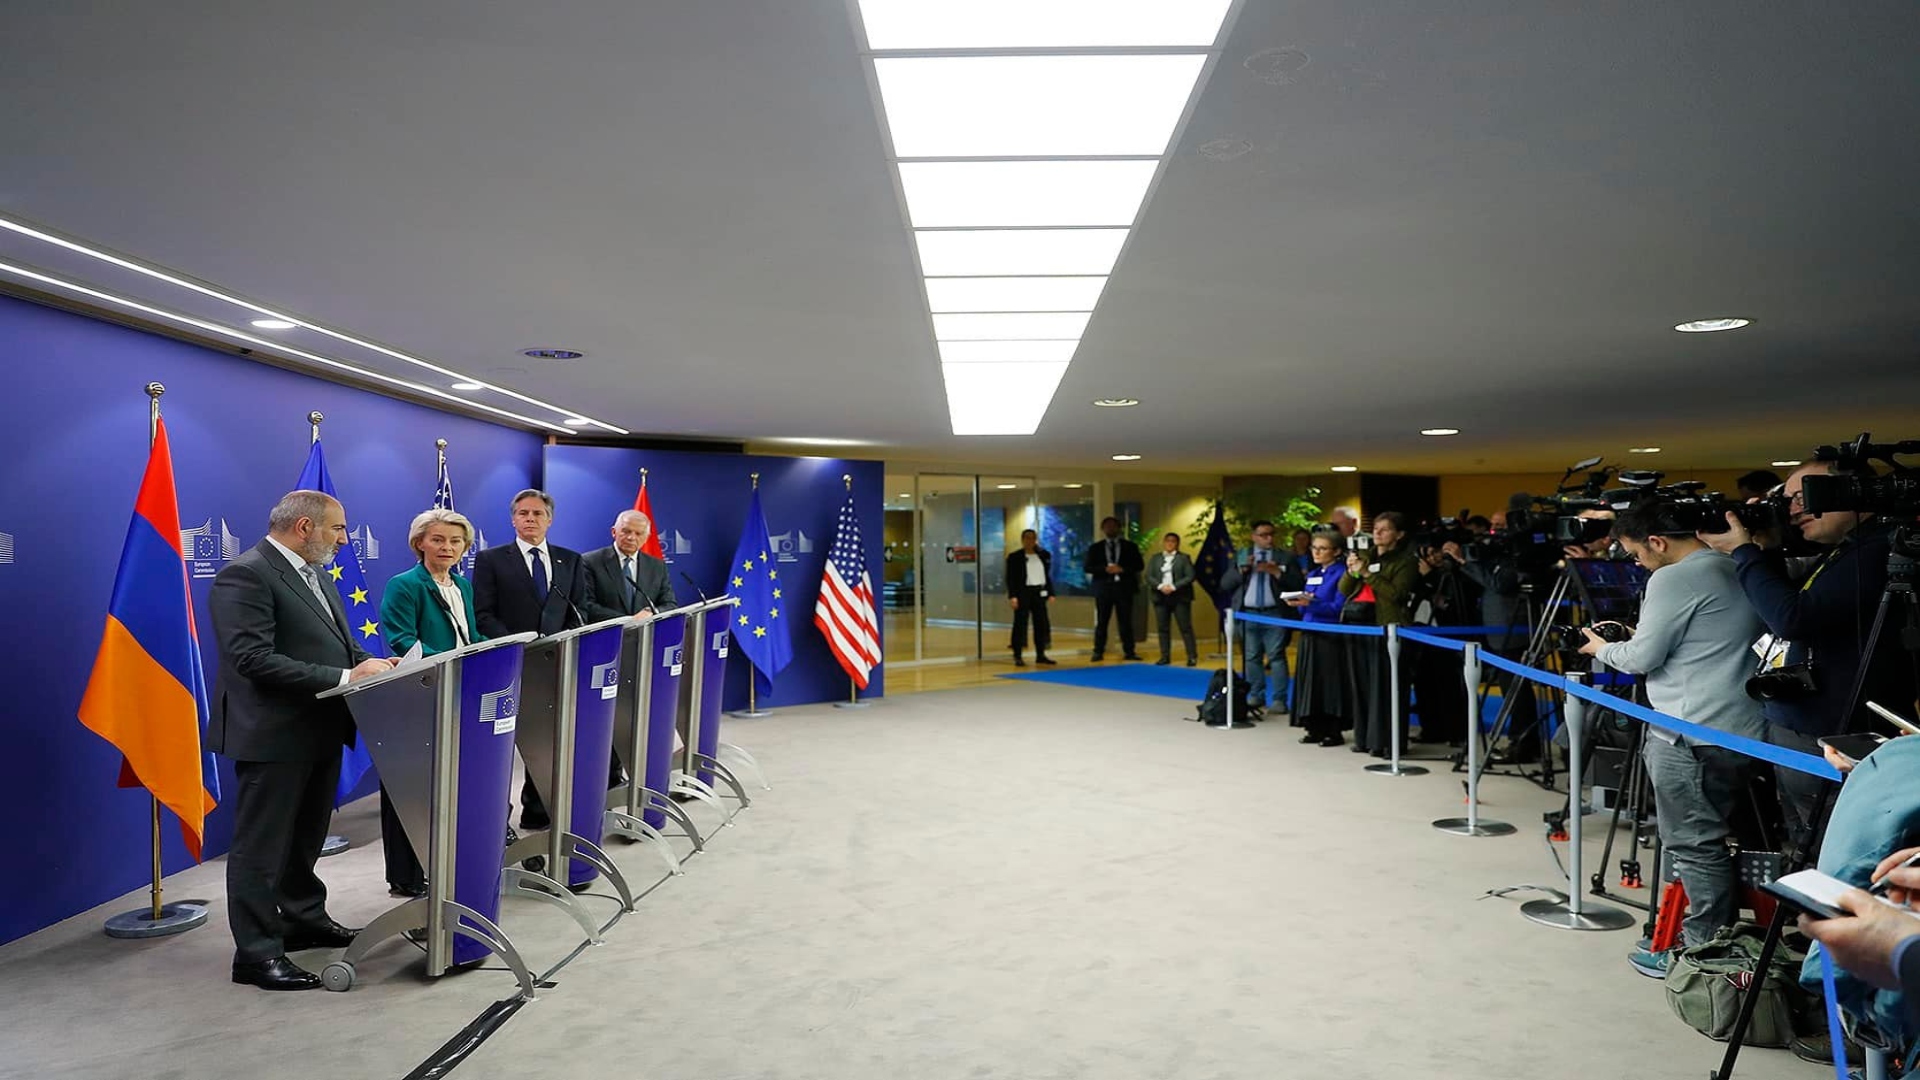 Հայաստան-ԱՄՆ-ԵՄ համատեղ հայտարարություն՝ բրյուսելյան հանդիպման արդյունքներով